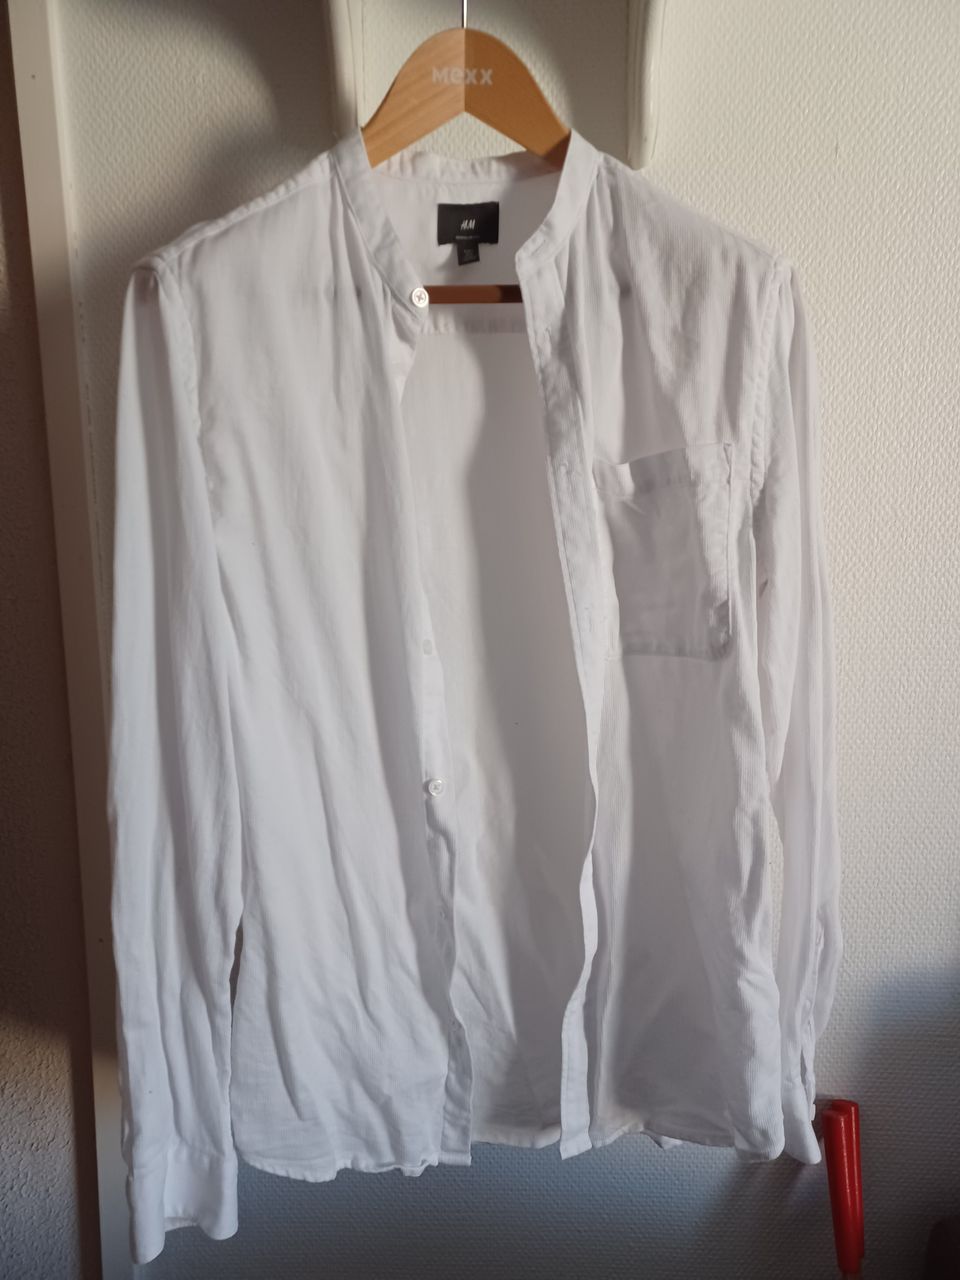 Poikien valkoinen pitkähihainen siisti paita S